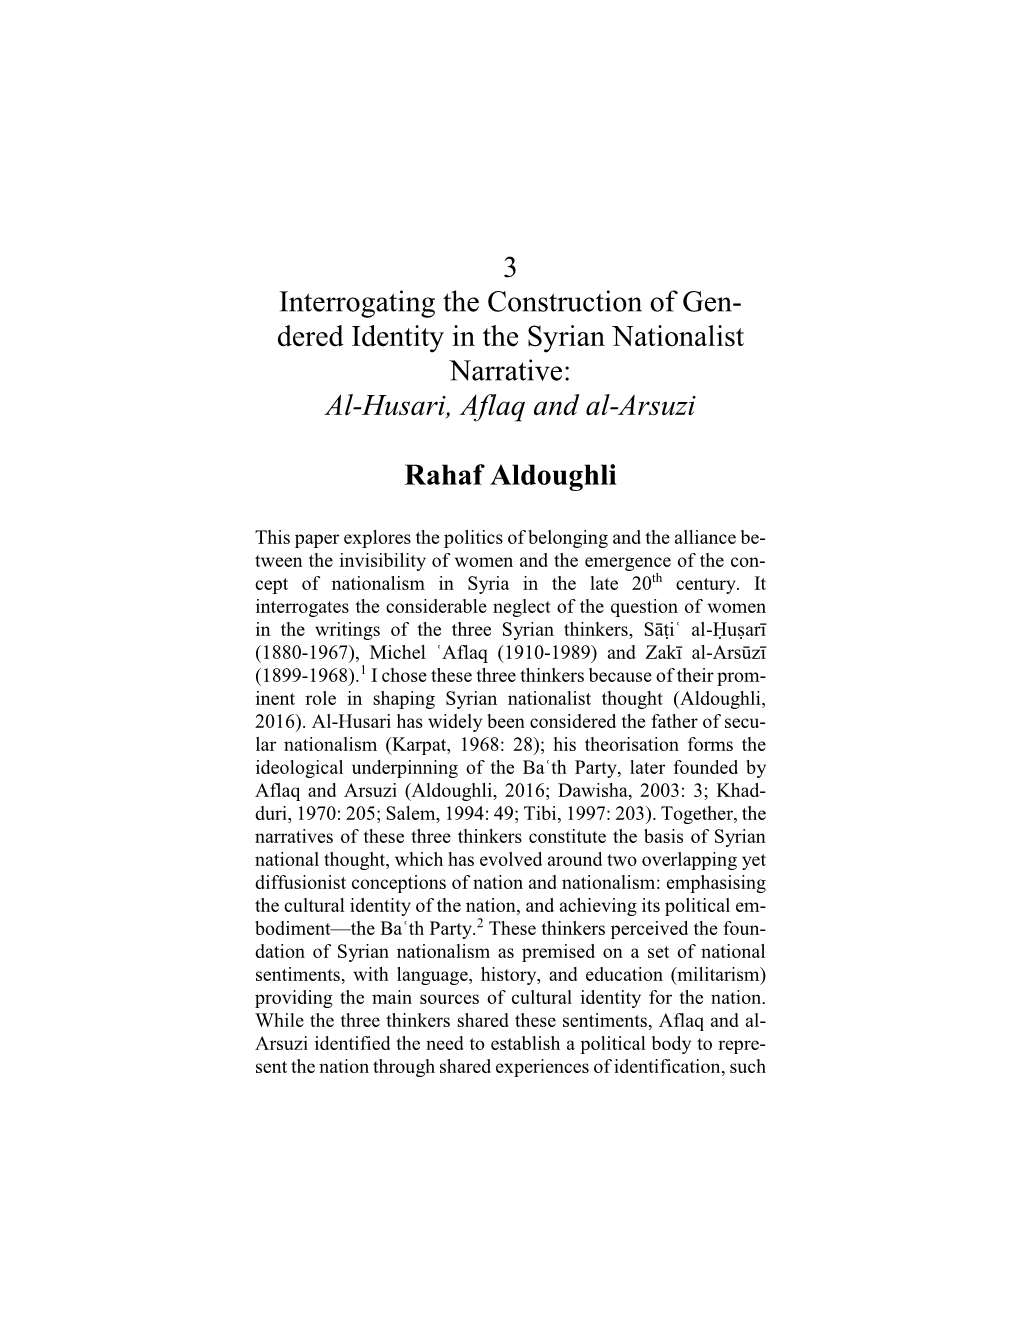 Dered Identity in the Syrian Nationalist Narrative: Al-Husari, Aflaq and Al-Arsuzi